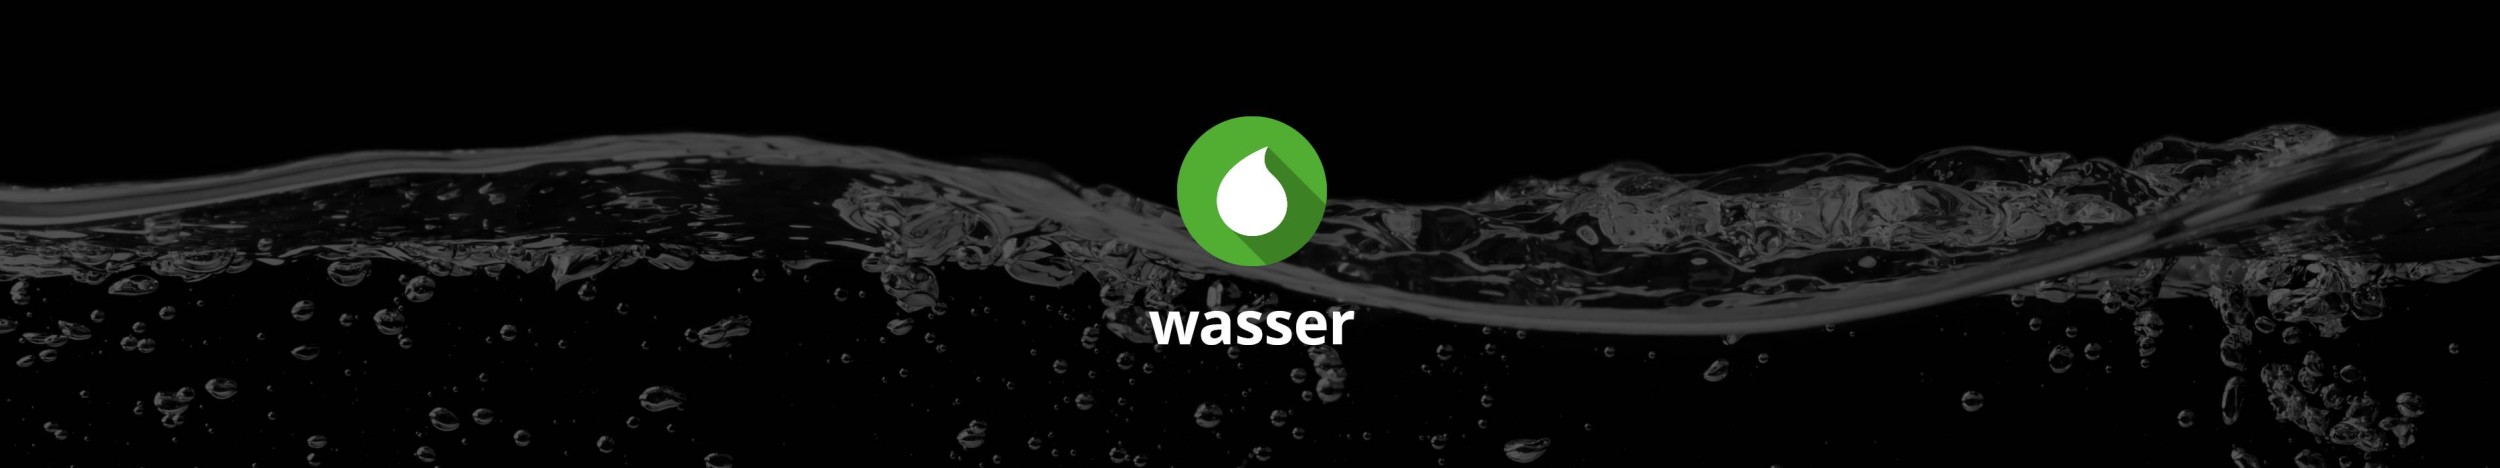 header wasser 1